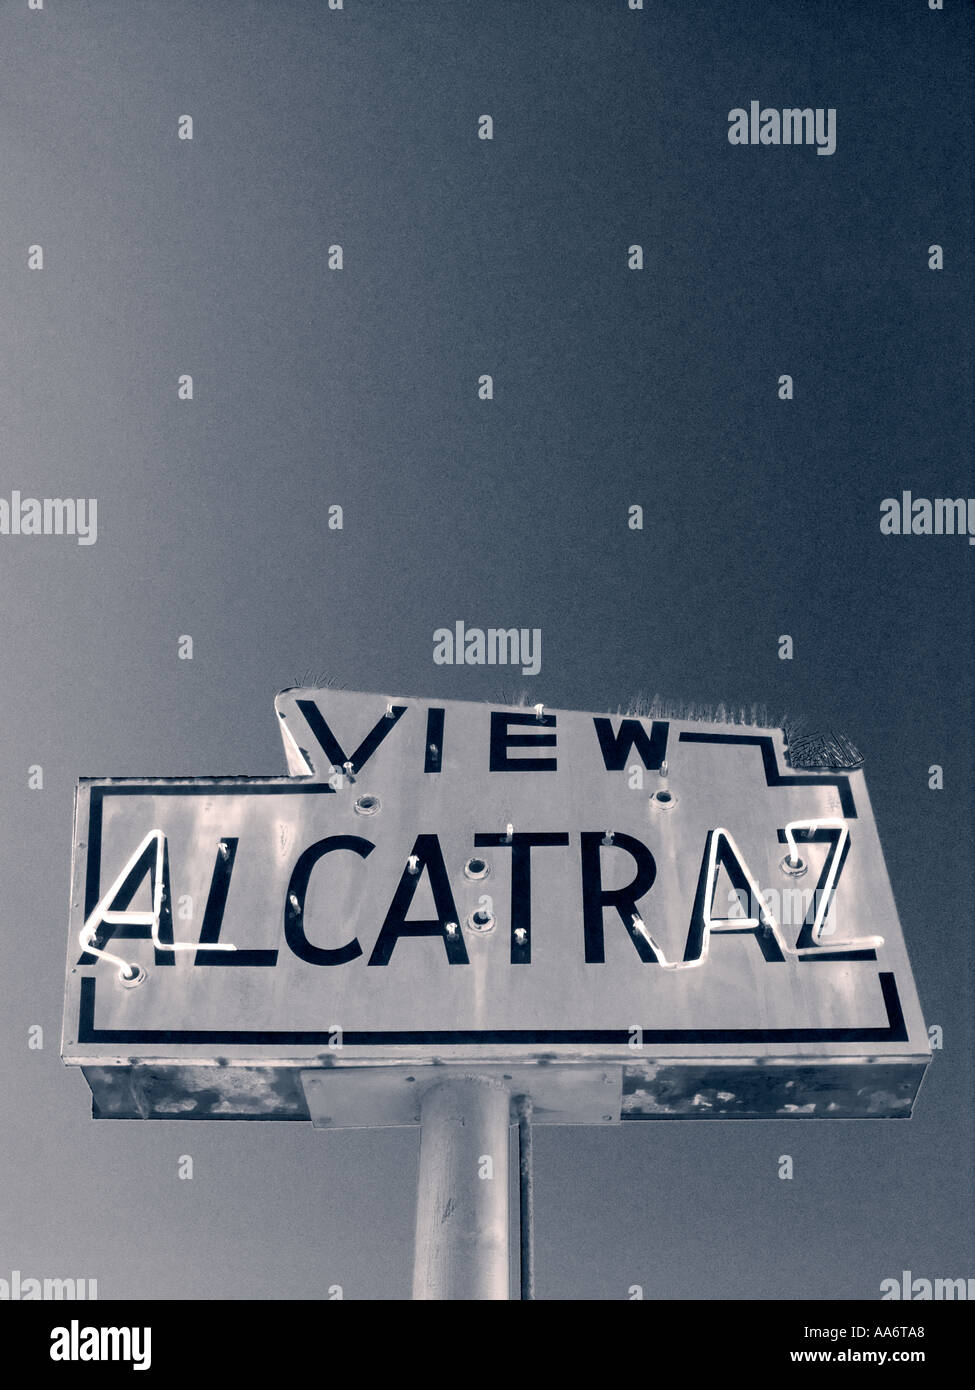 ALCATRAZ TOUR REISE SCHILD Retro weatherbeaten Zeichen an der Fähre nach Alcatraz Gefängnis San Francisco Kalifornien USA Stockfoto